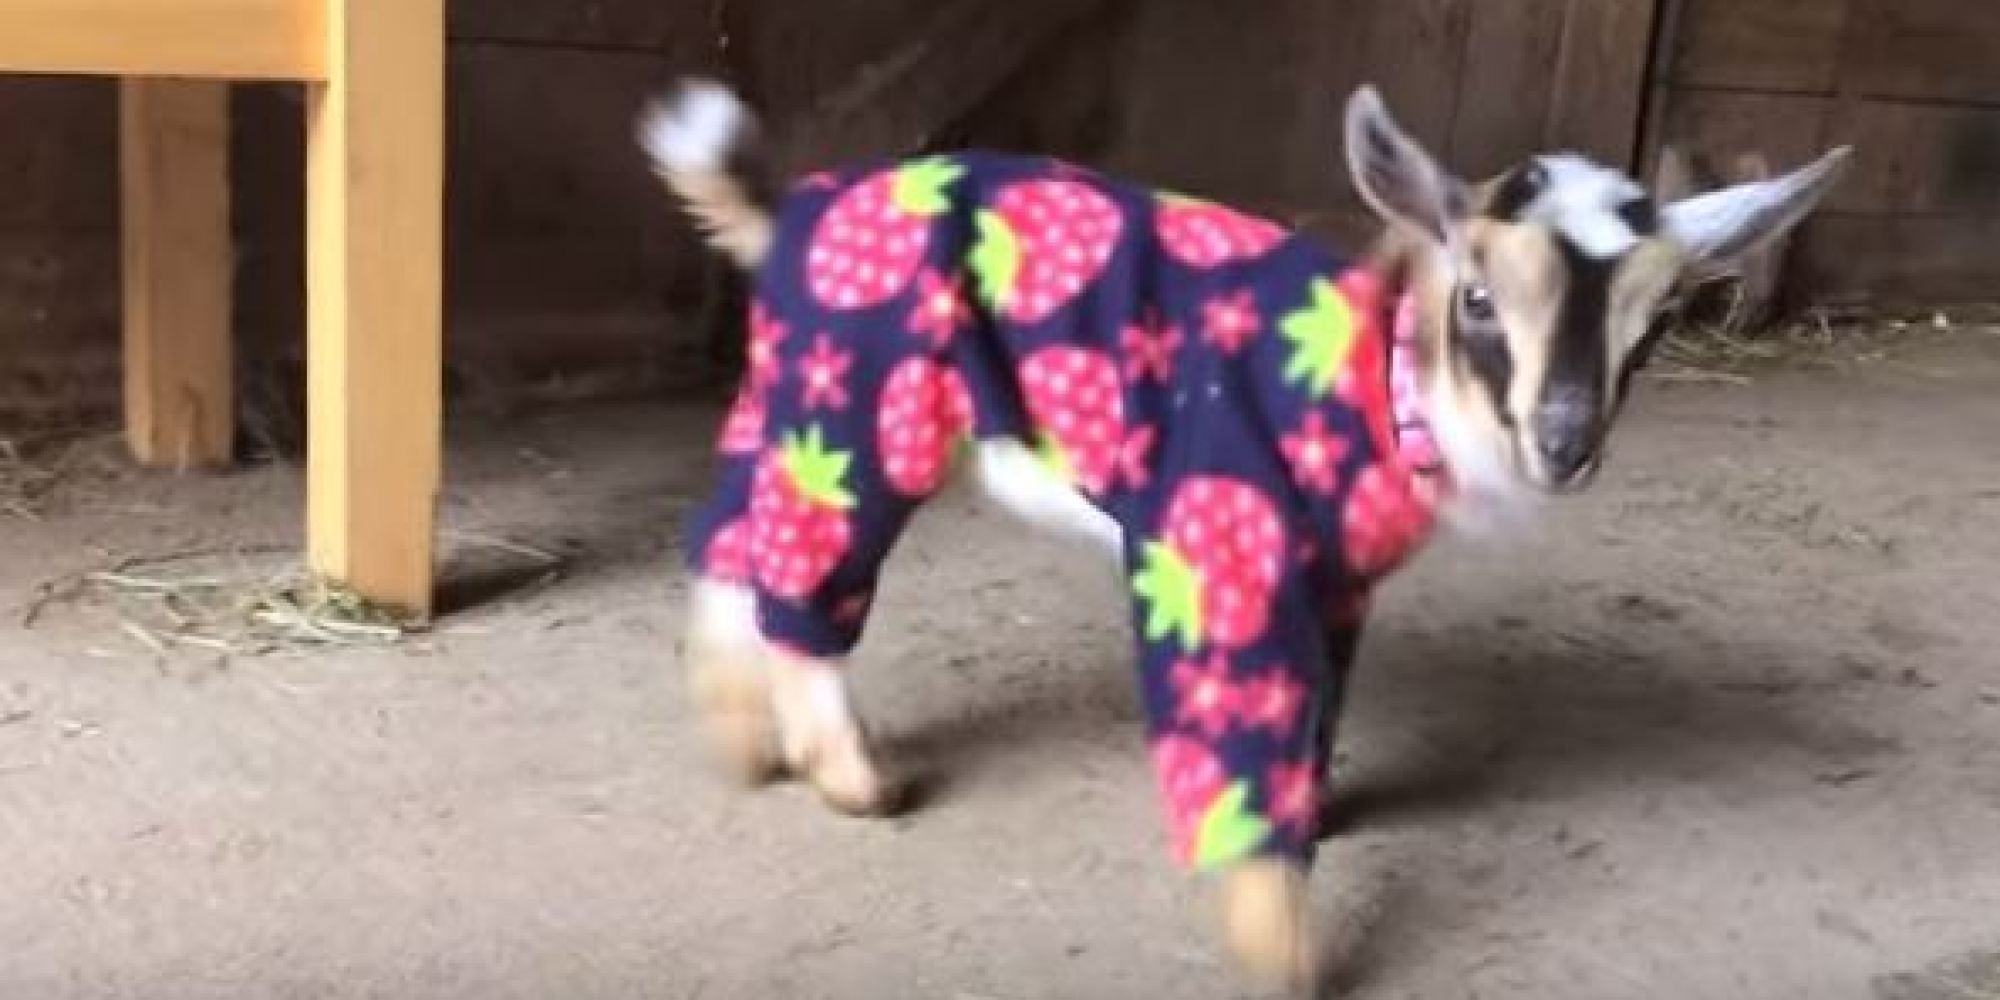 Cabras bebés recebem pijamas novos e dão pulinhos de alegria